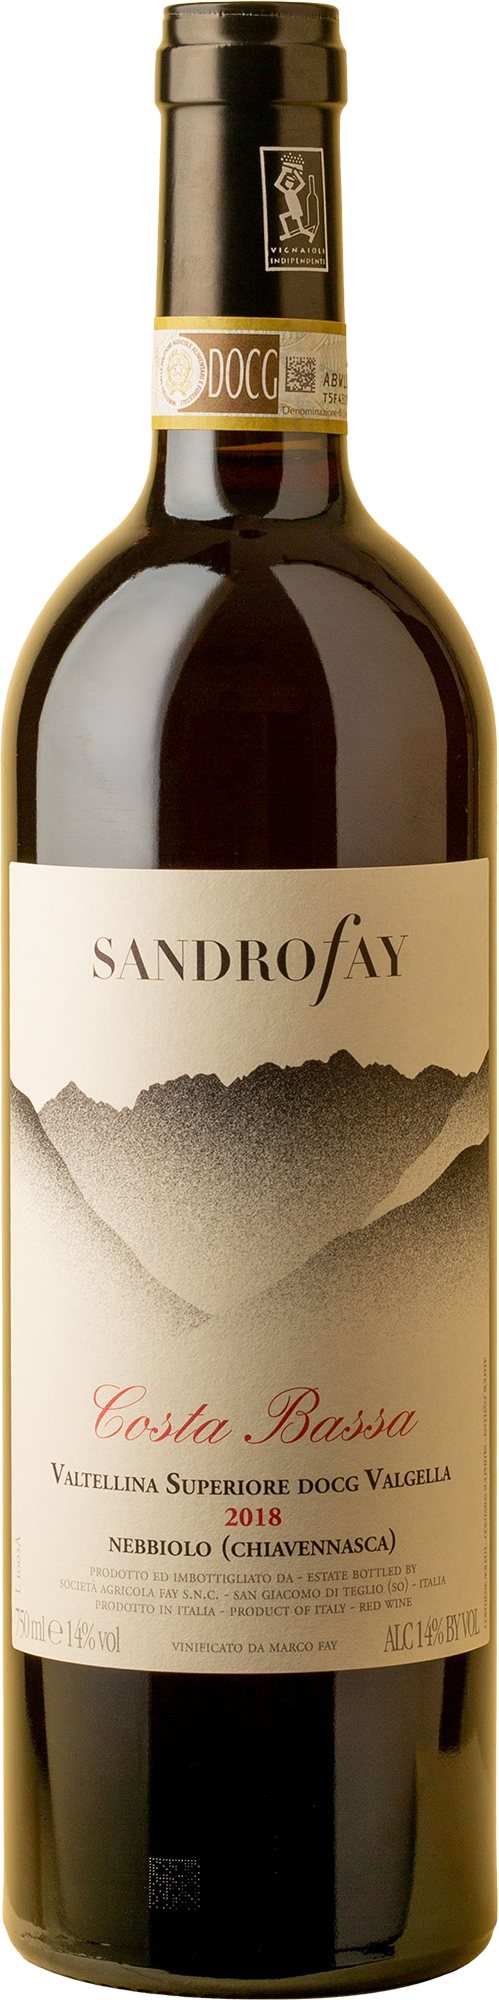 Sandro Fay - Costa Bassa Valtellina Superiore Nebbiolo 2018 Red Wine